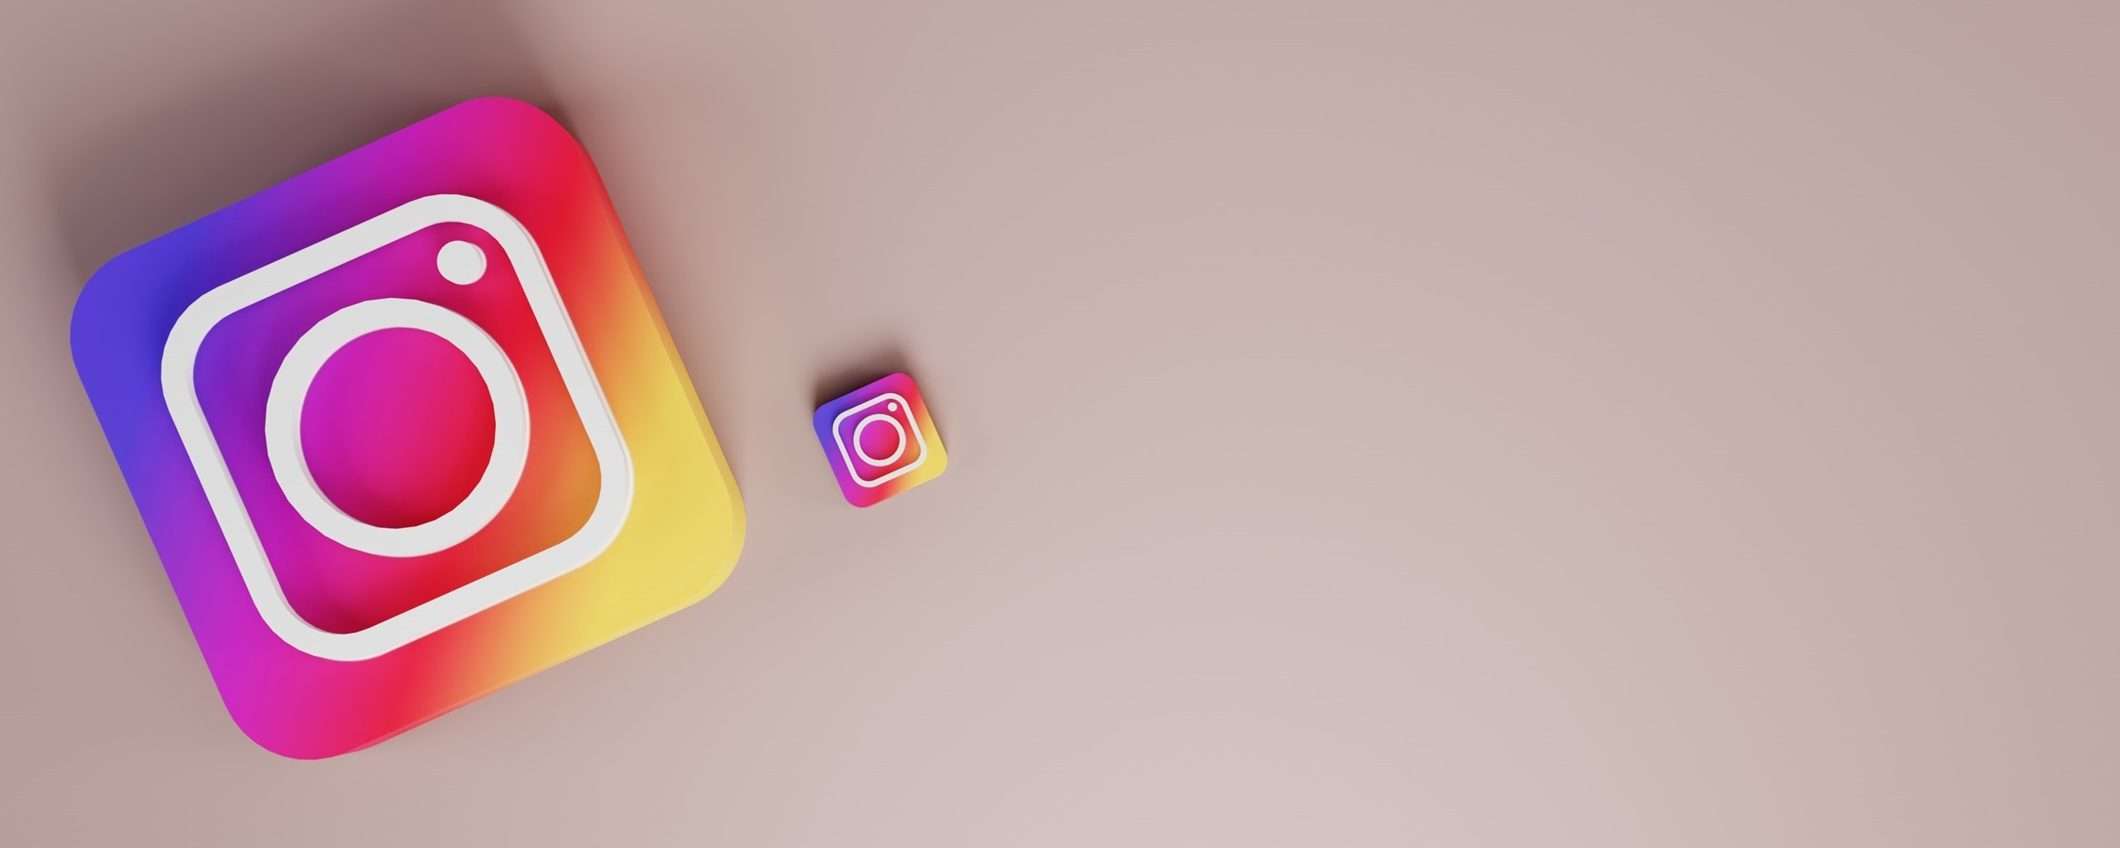 Le Storie di Instagram saranno visibili per 7 giorni